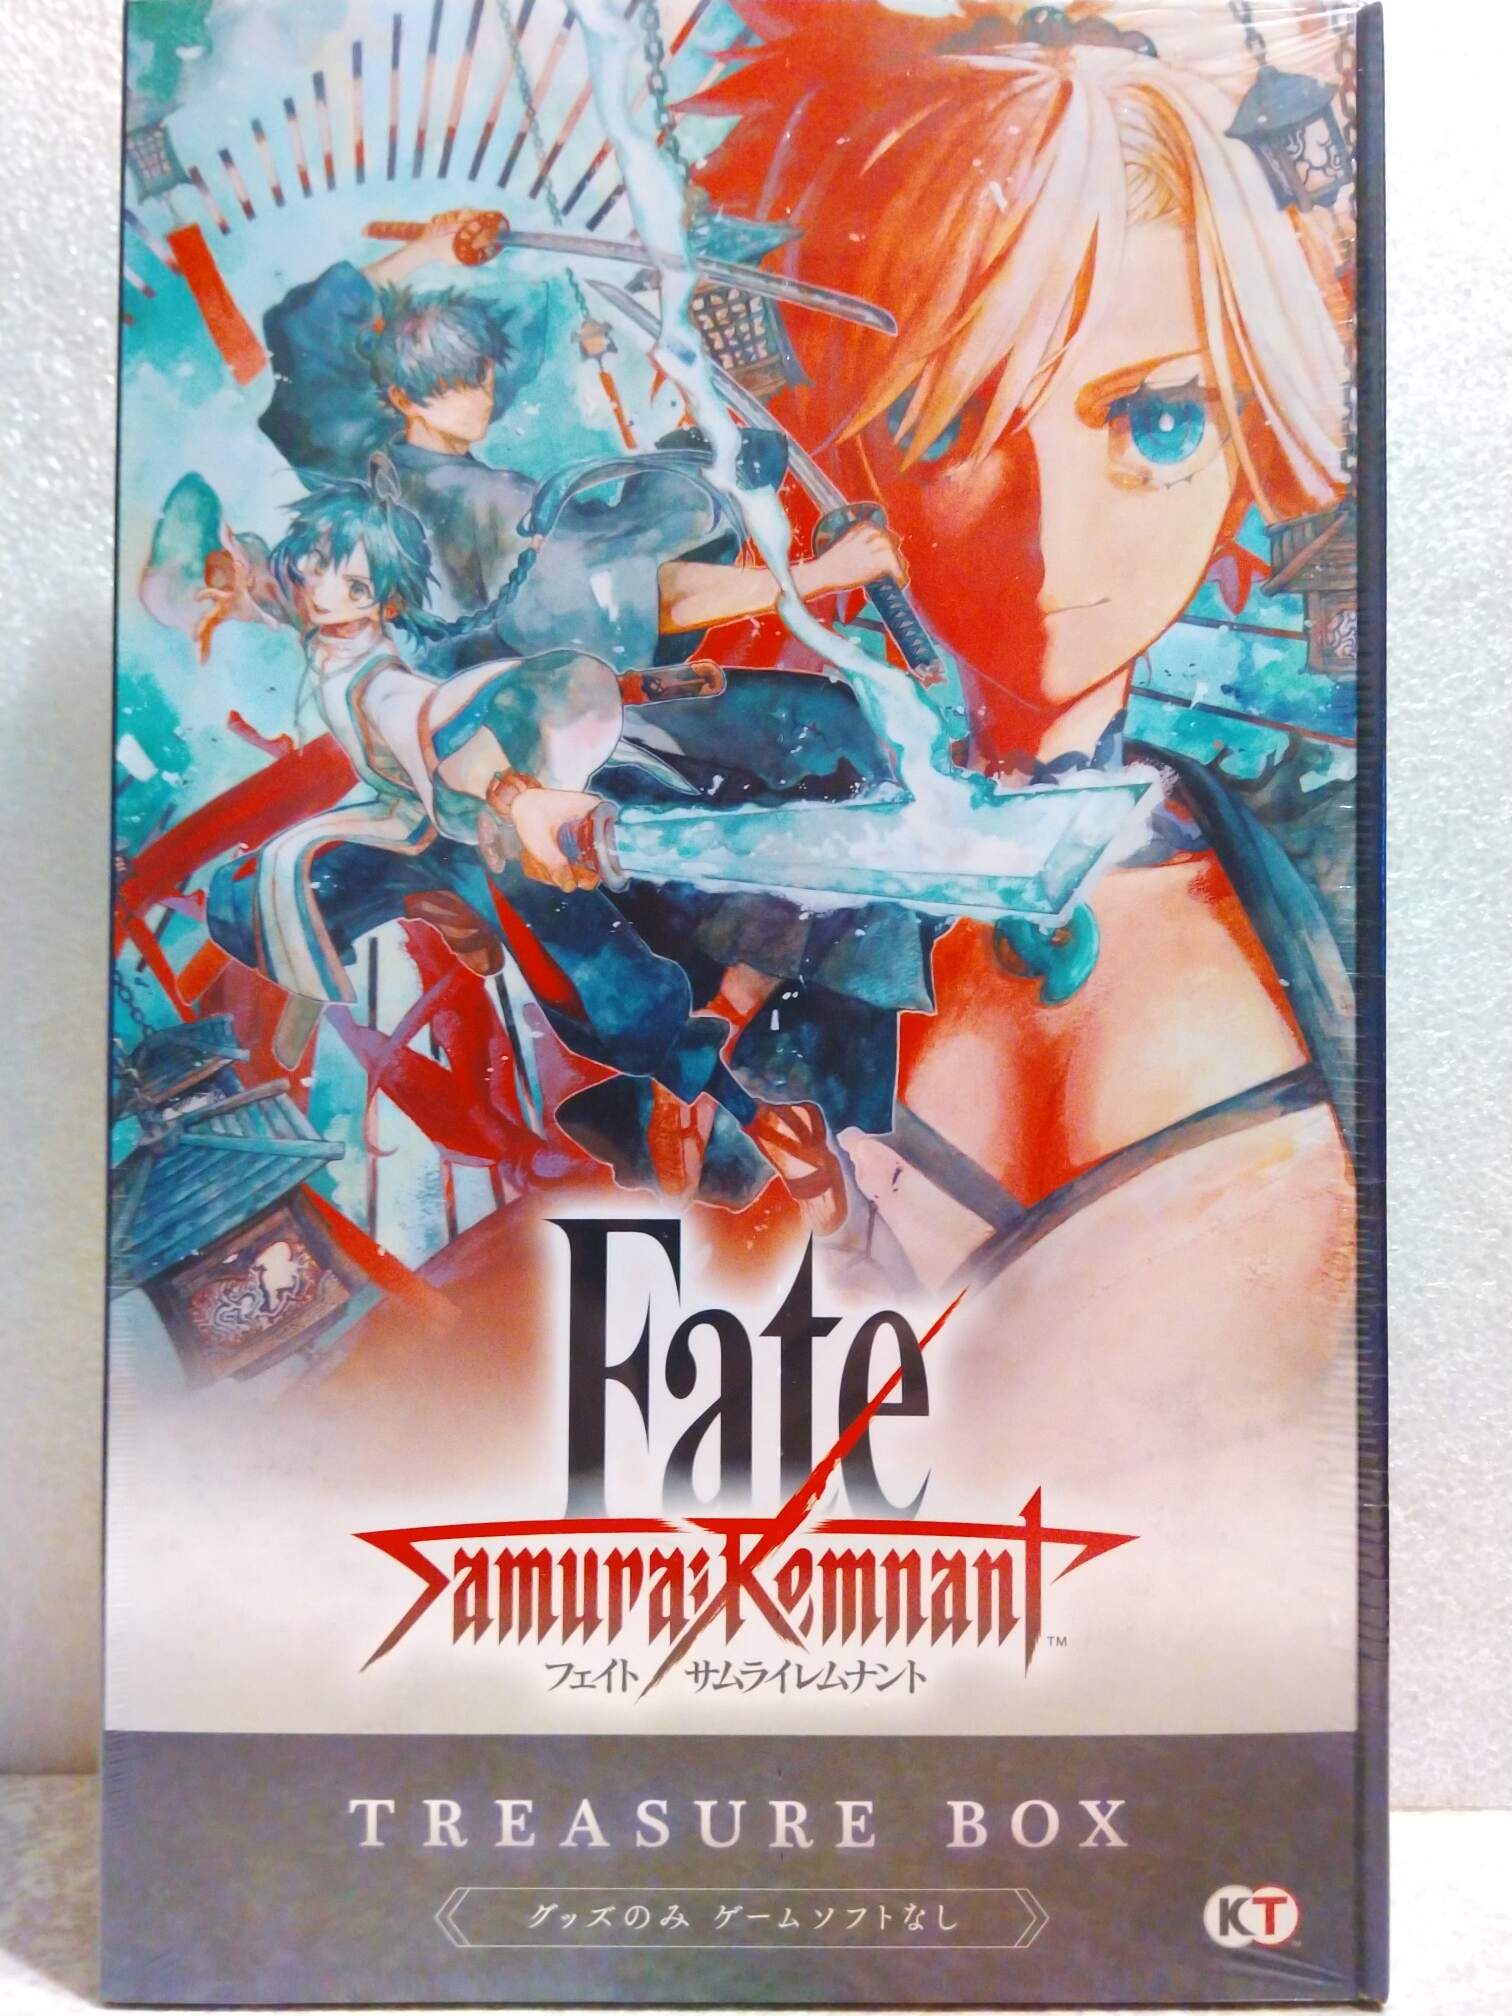 Fate/Samurai Remnant PS4日版+寶箱版純週邊- 巴哈姆特